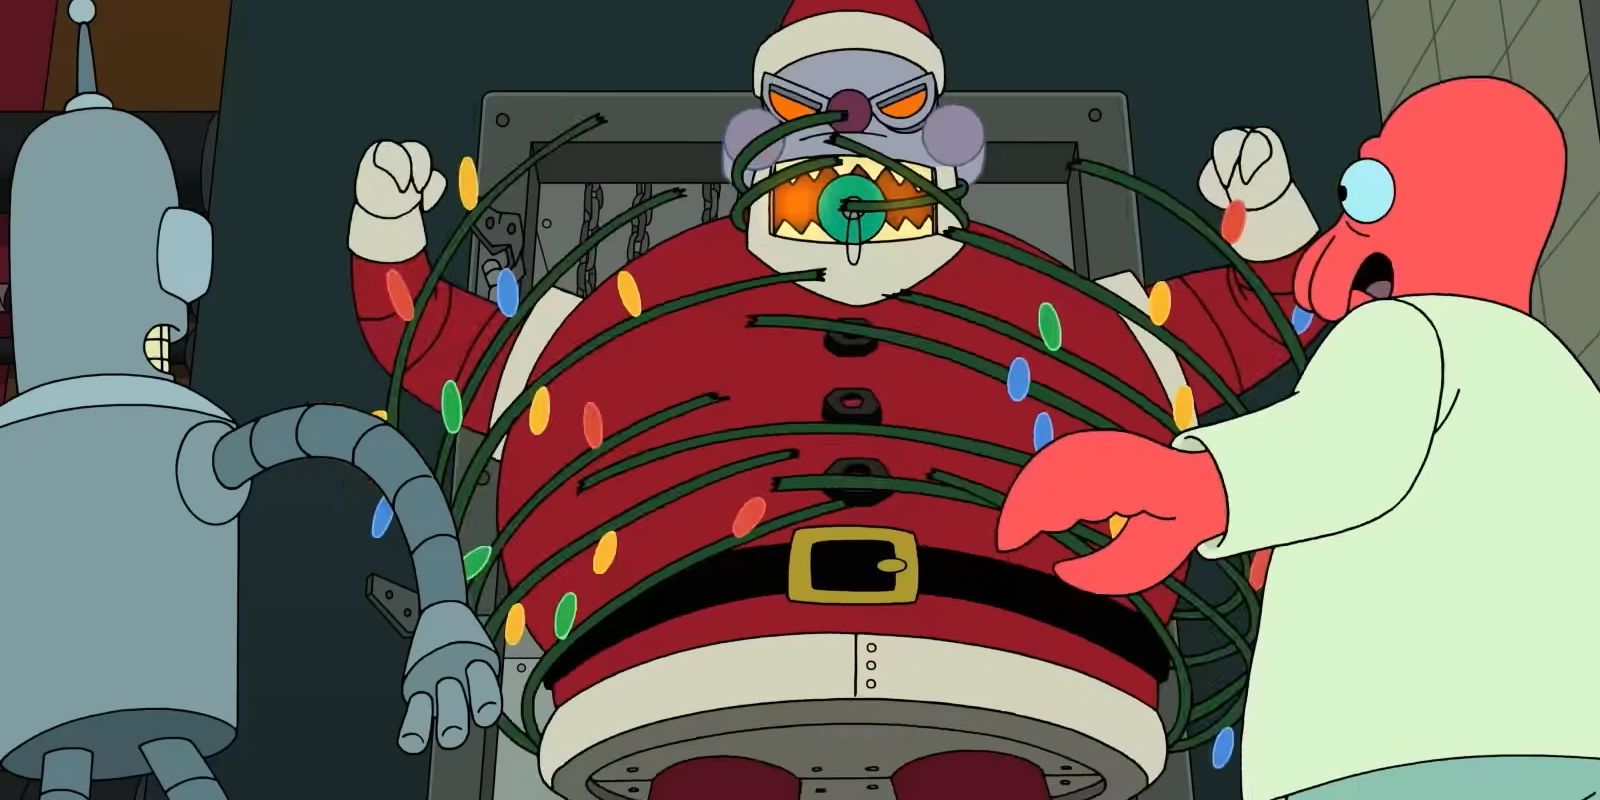 Bender and Zoidberg with Robot Santa Claus in Futurama season 11